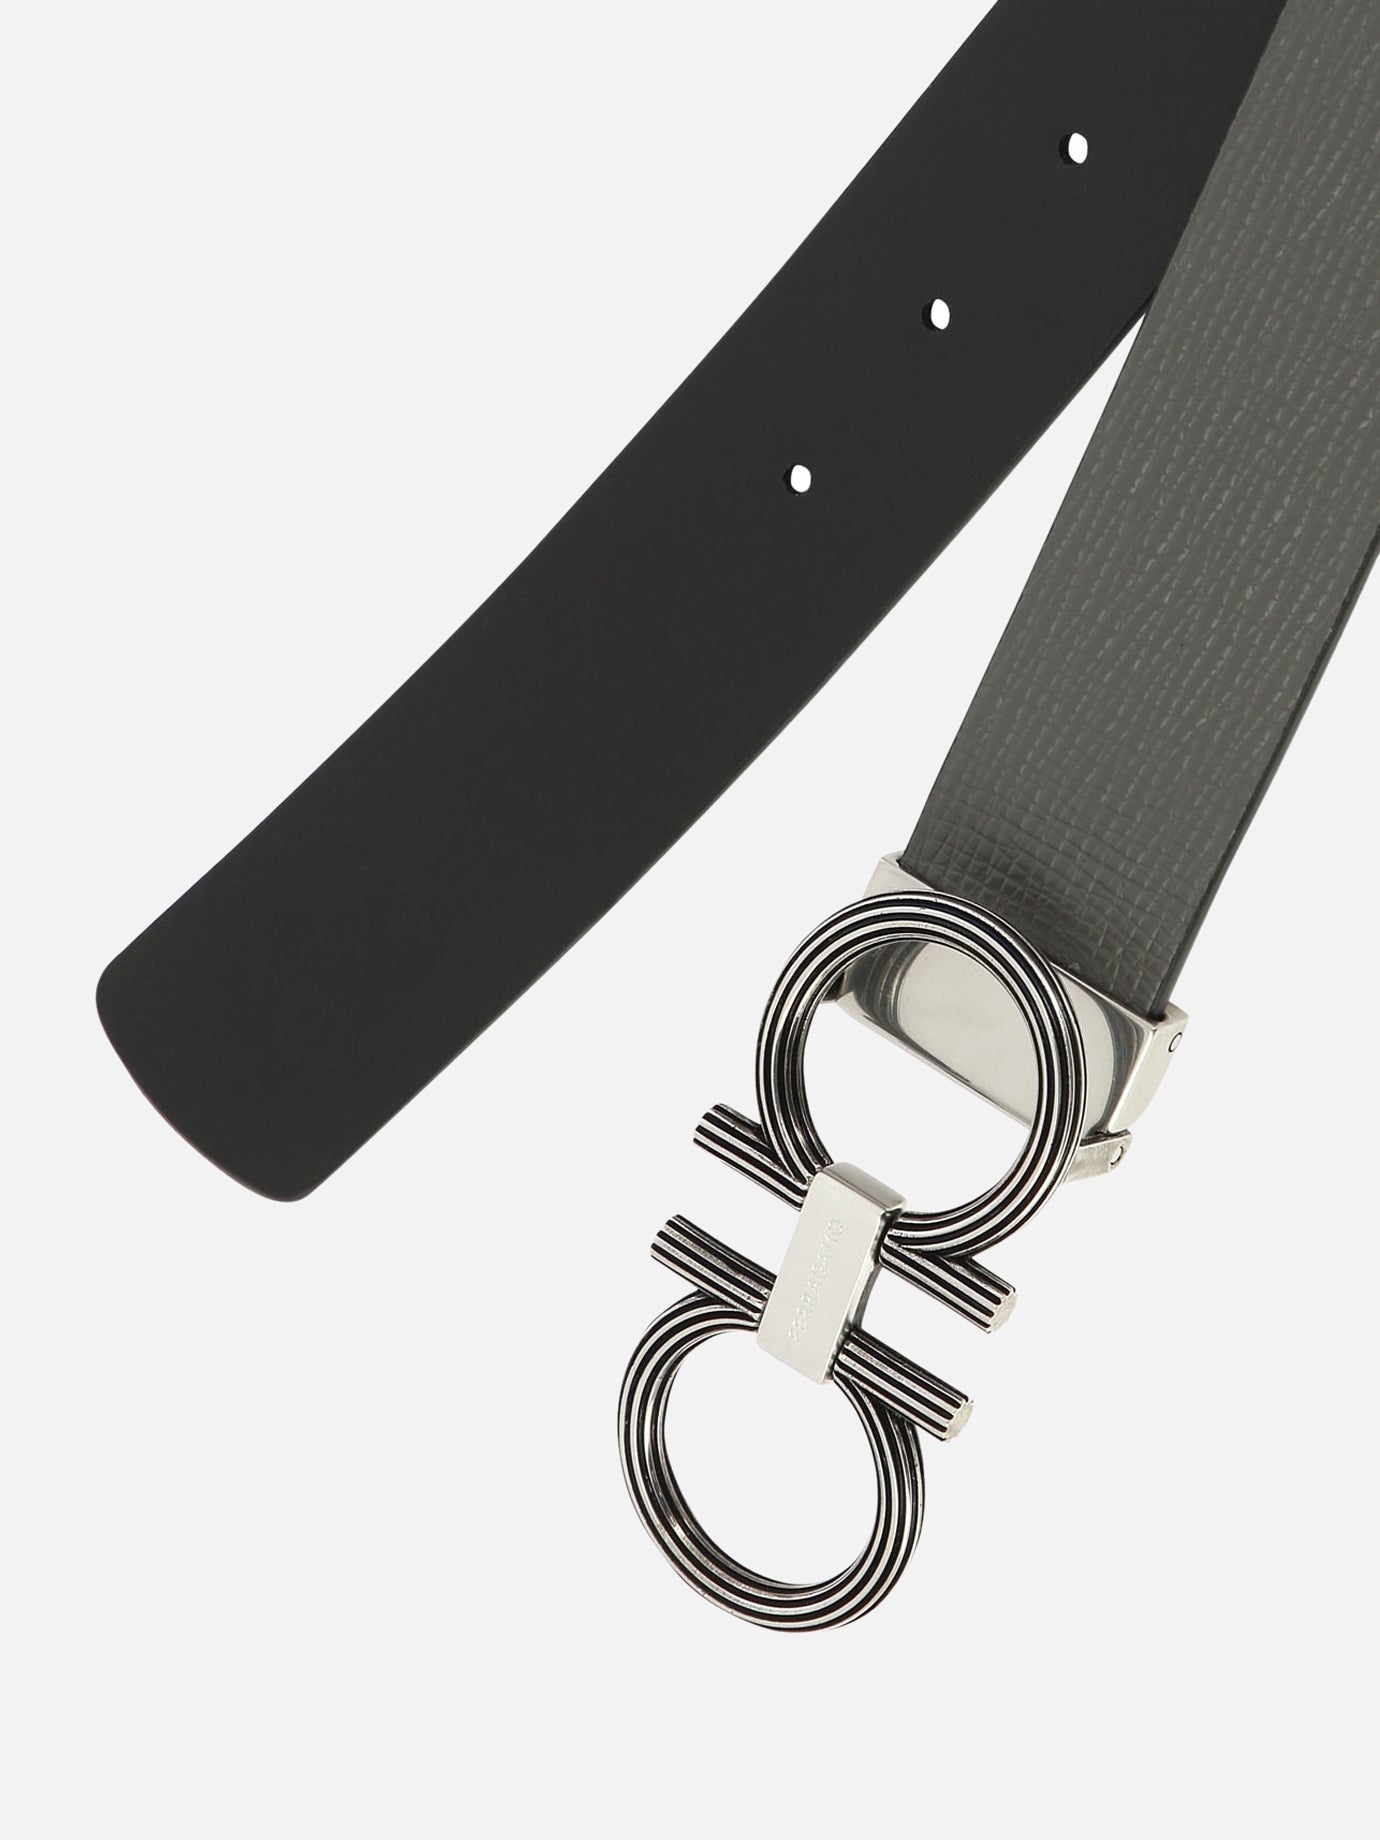 Adjustable and reversibile "Gancini" belt